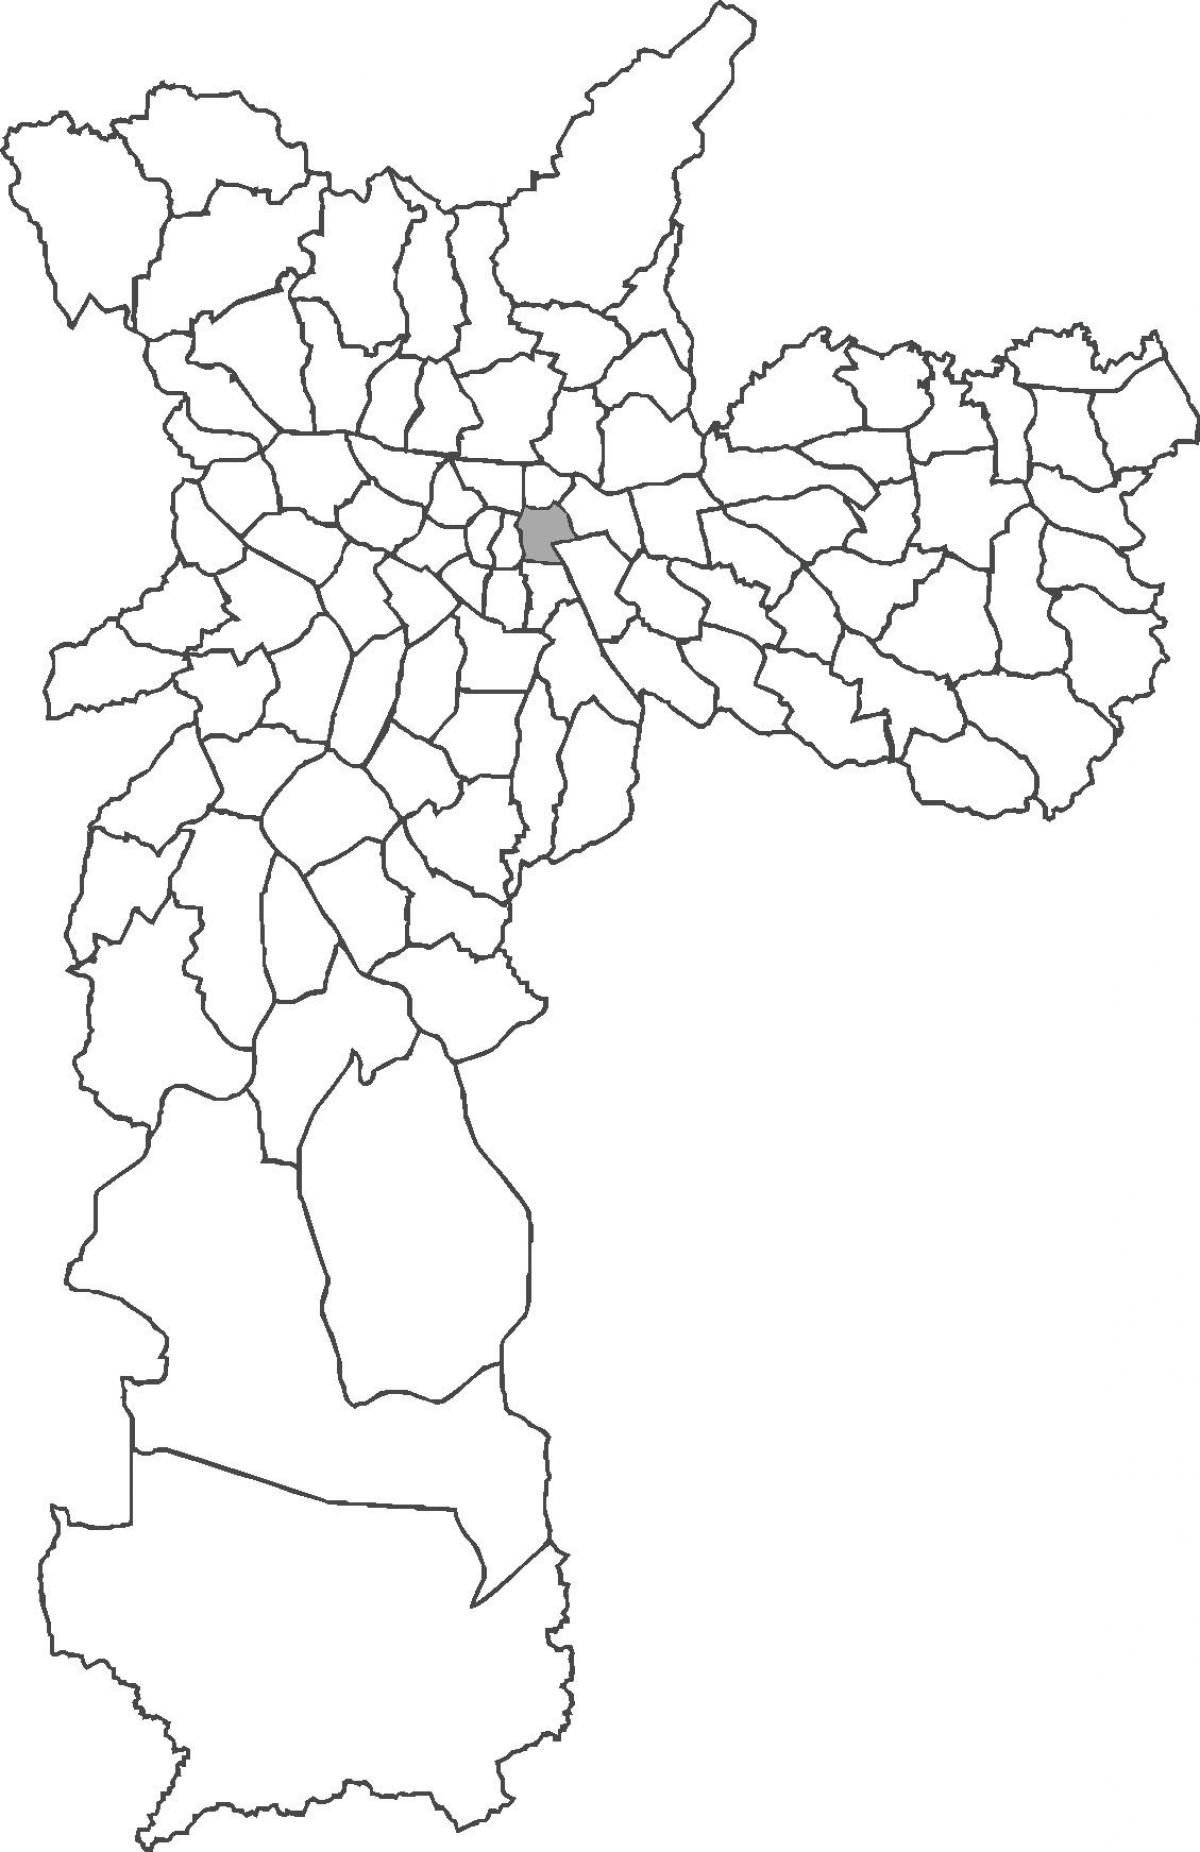 Քարտեզ Брас շրջան